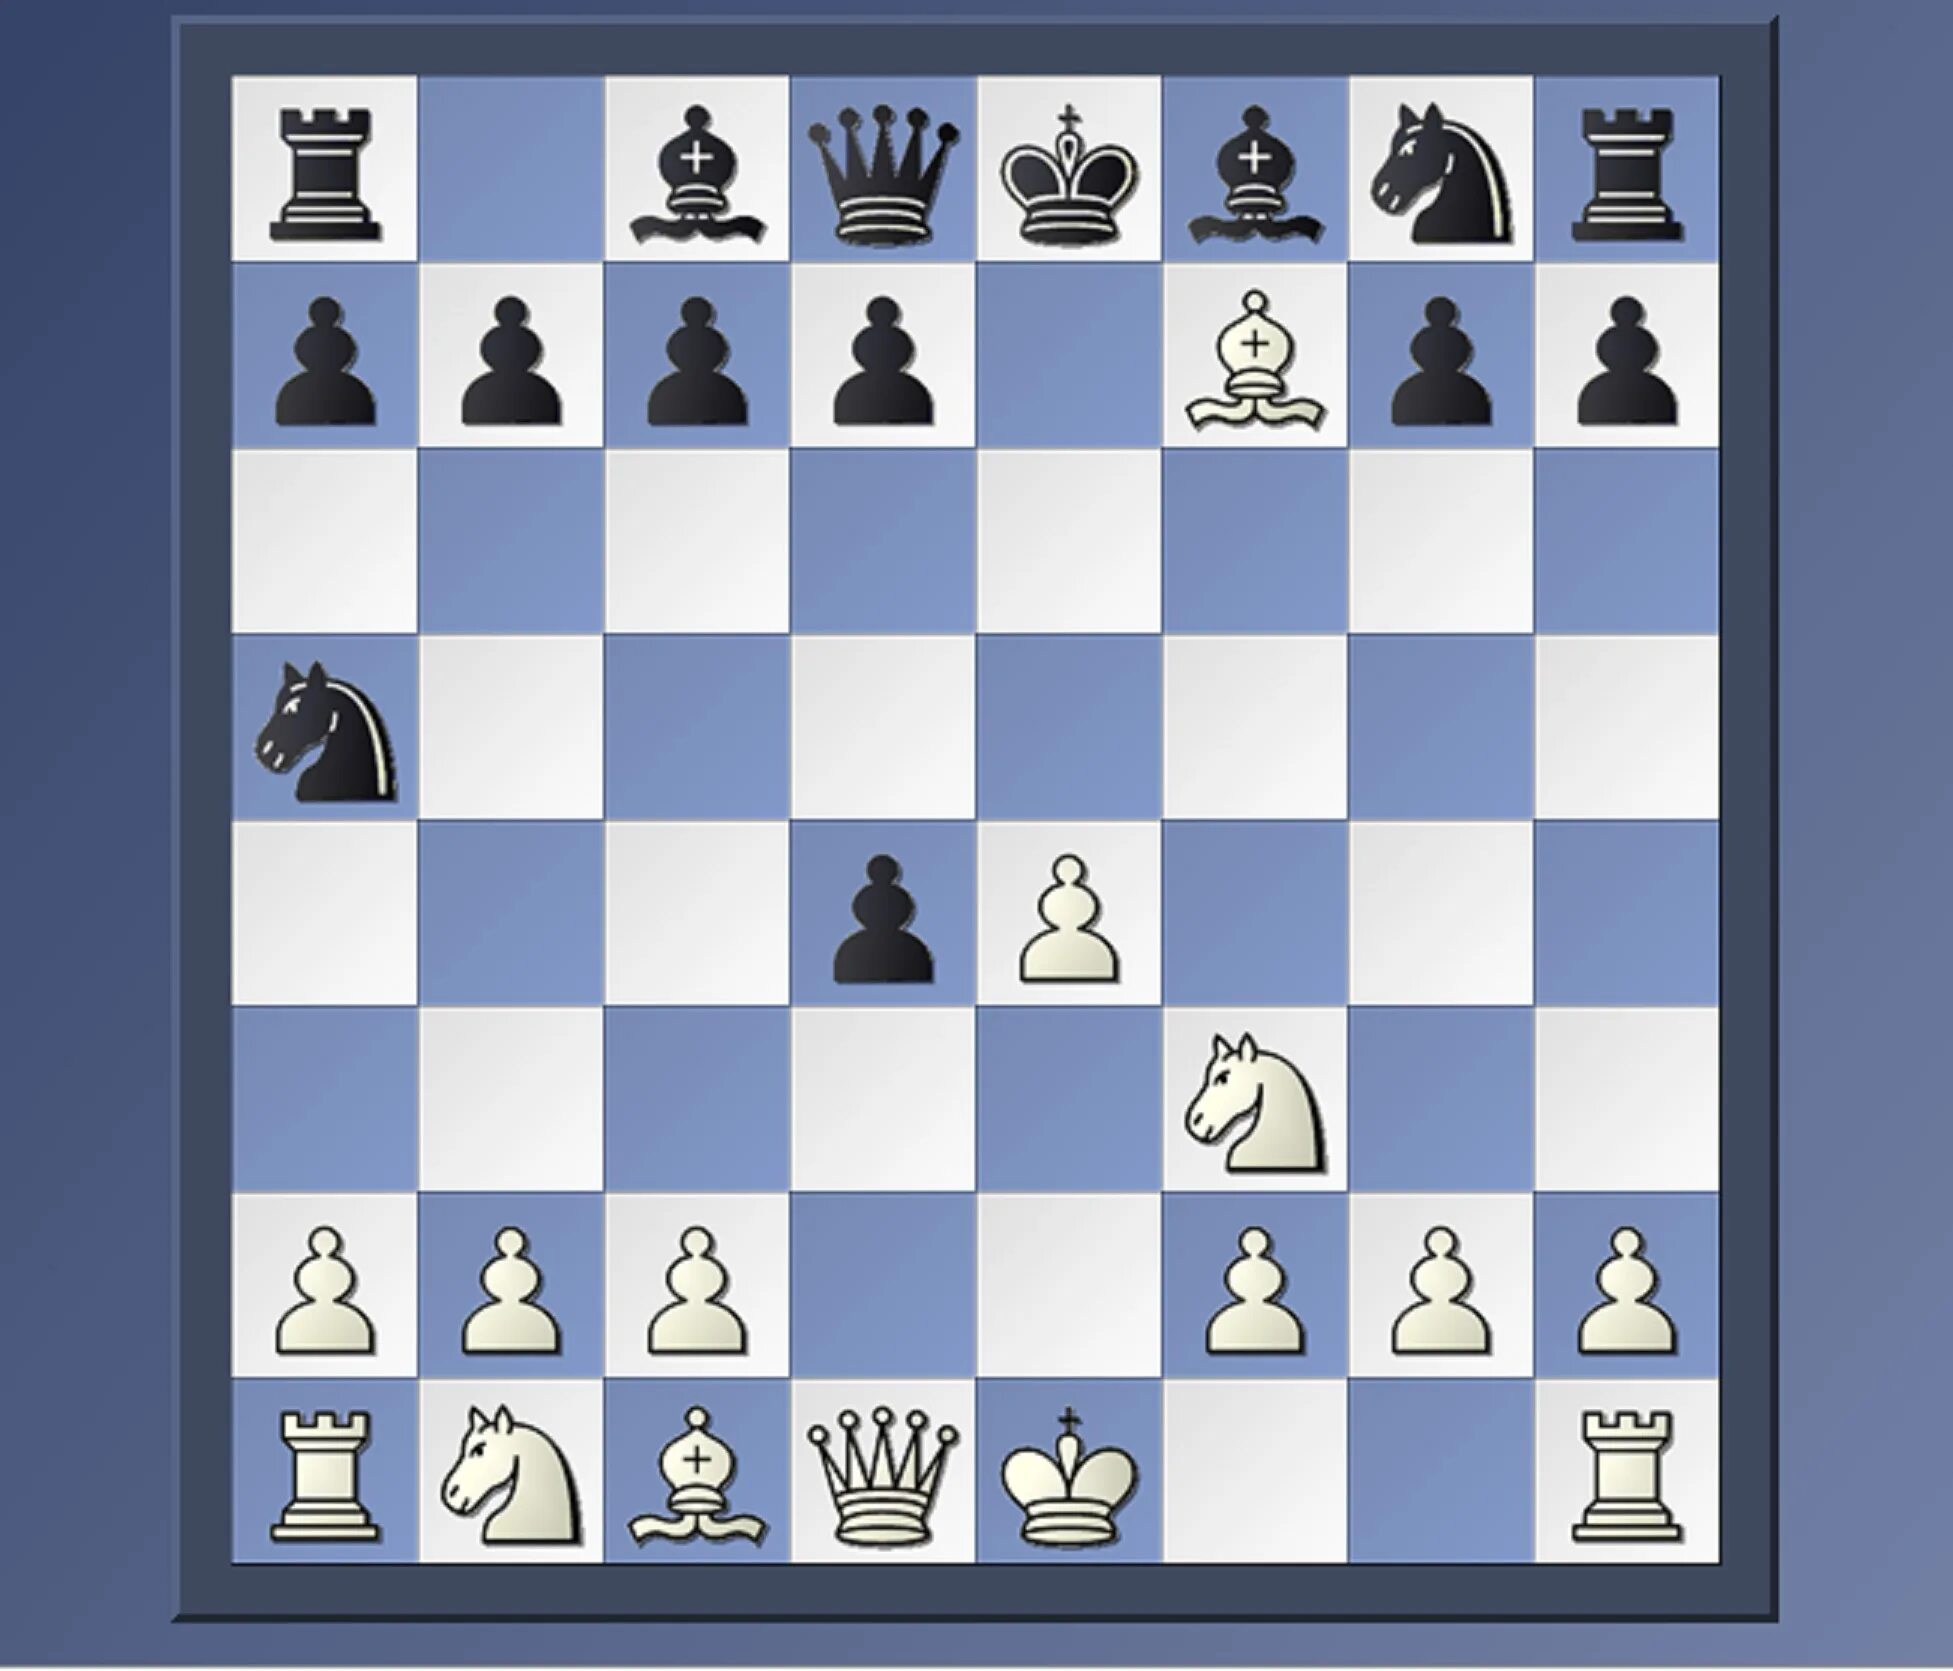 Дебют Бенко шахматы. E4 e5 d4 nc6. Гамбит Дамиано шахматы. Начальная расстановка шахматных фигур.